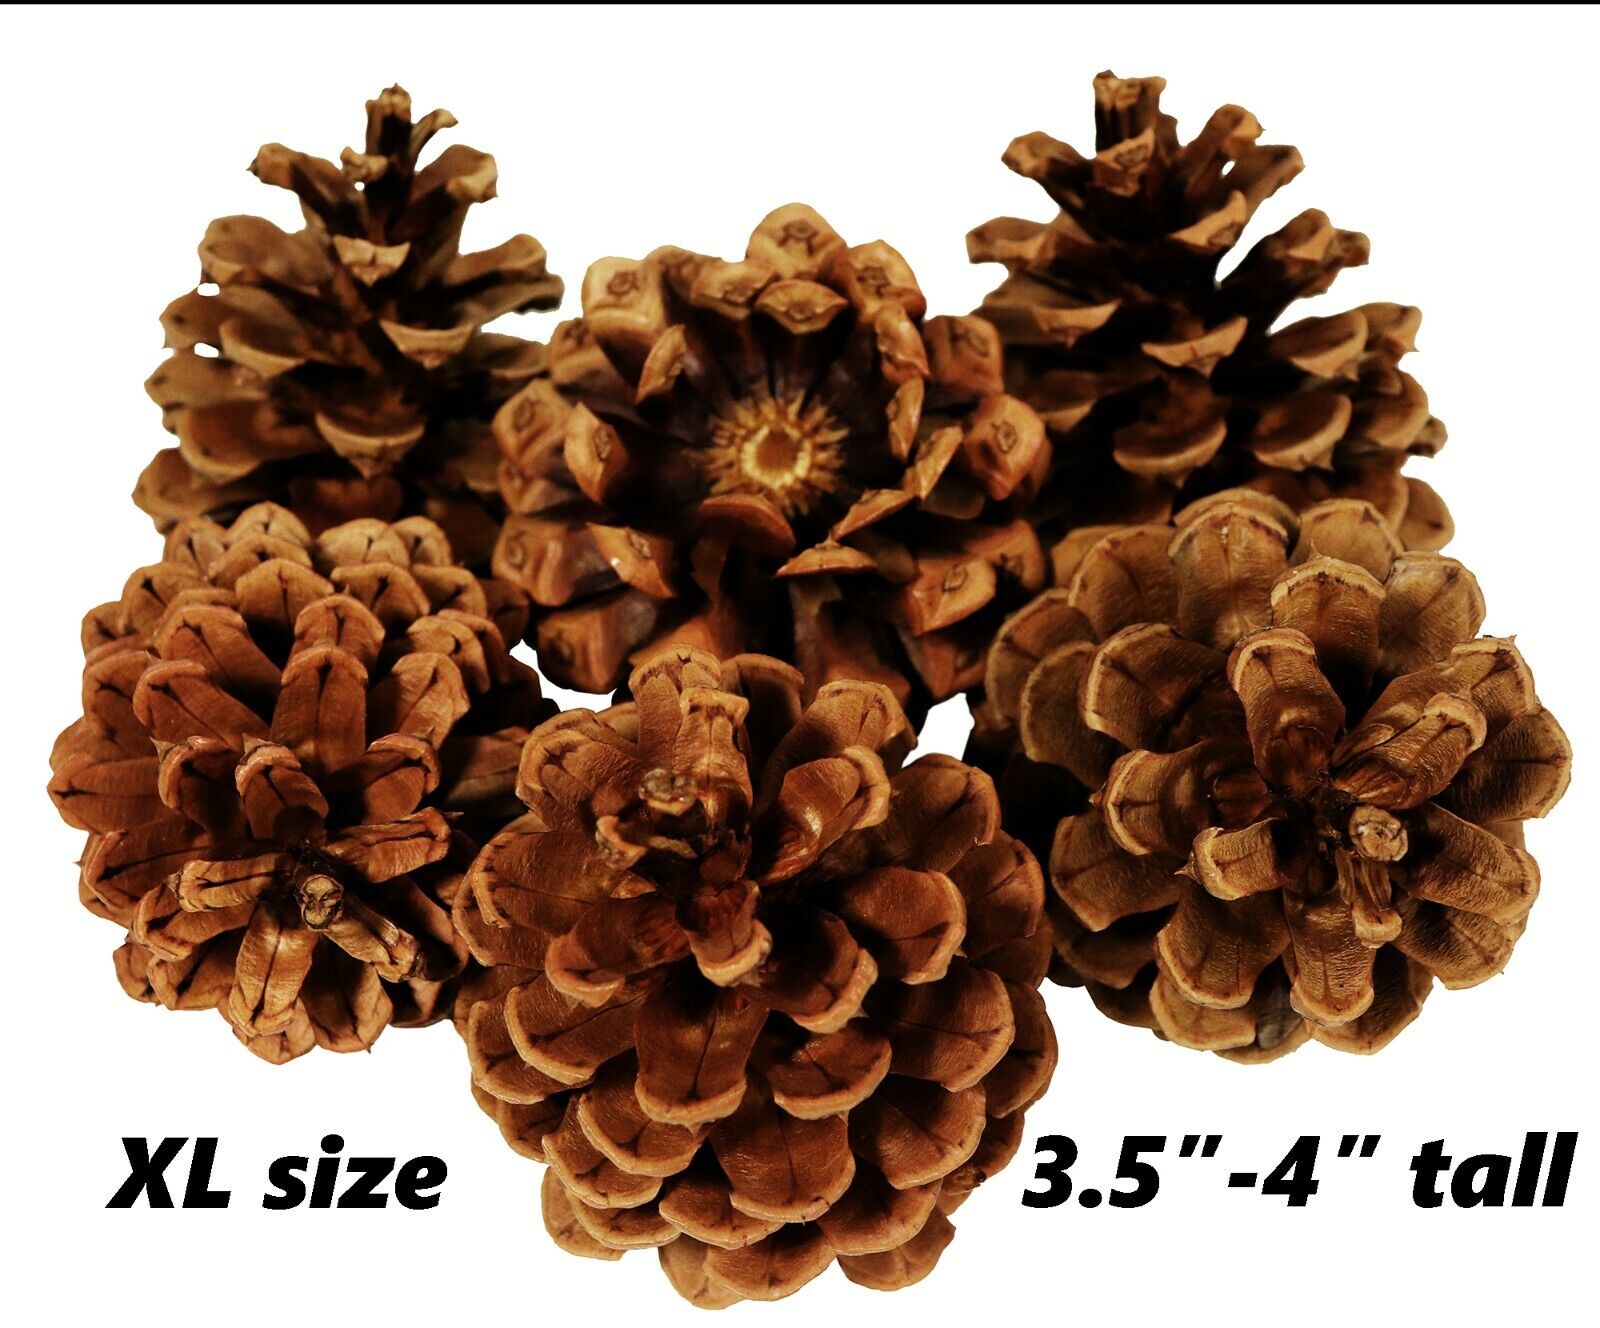 Lot of 50 - Oregon Ponderosa Pine Cones Organic Natural XL Siz...